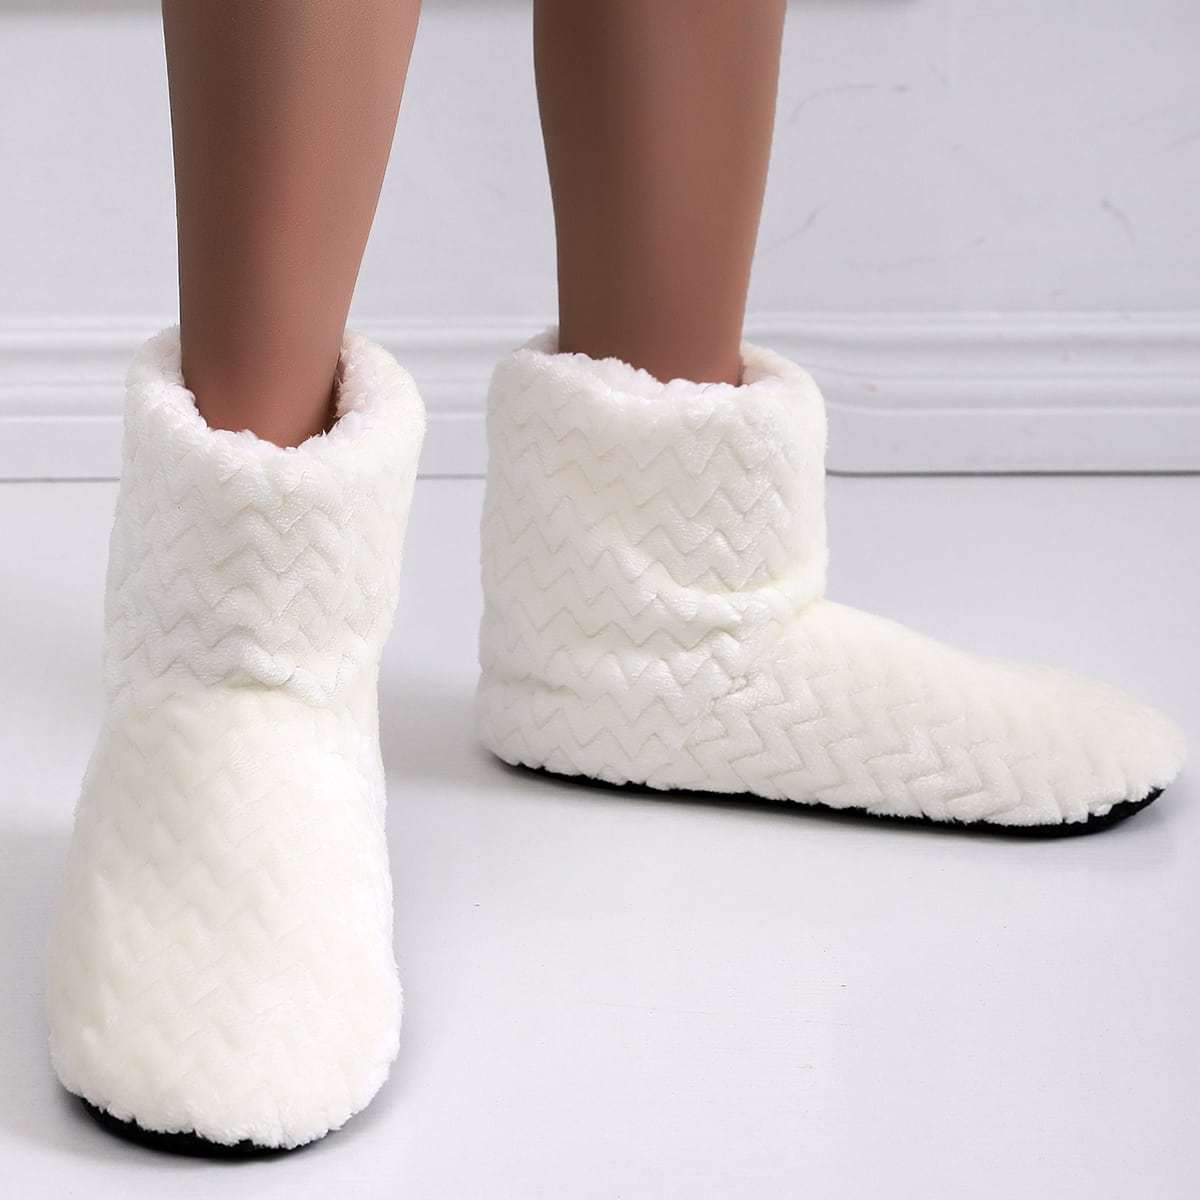 Buy Women's Slippers White Nightwear Online | Next UK